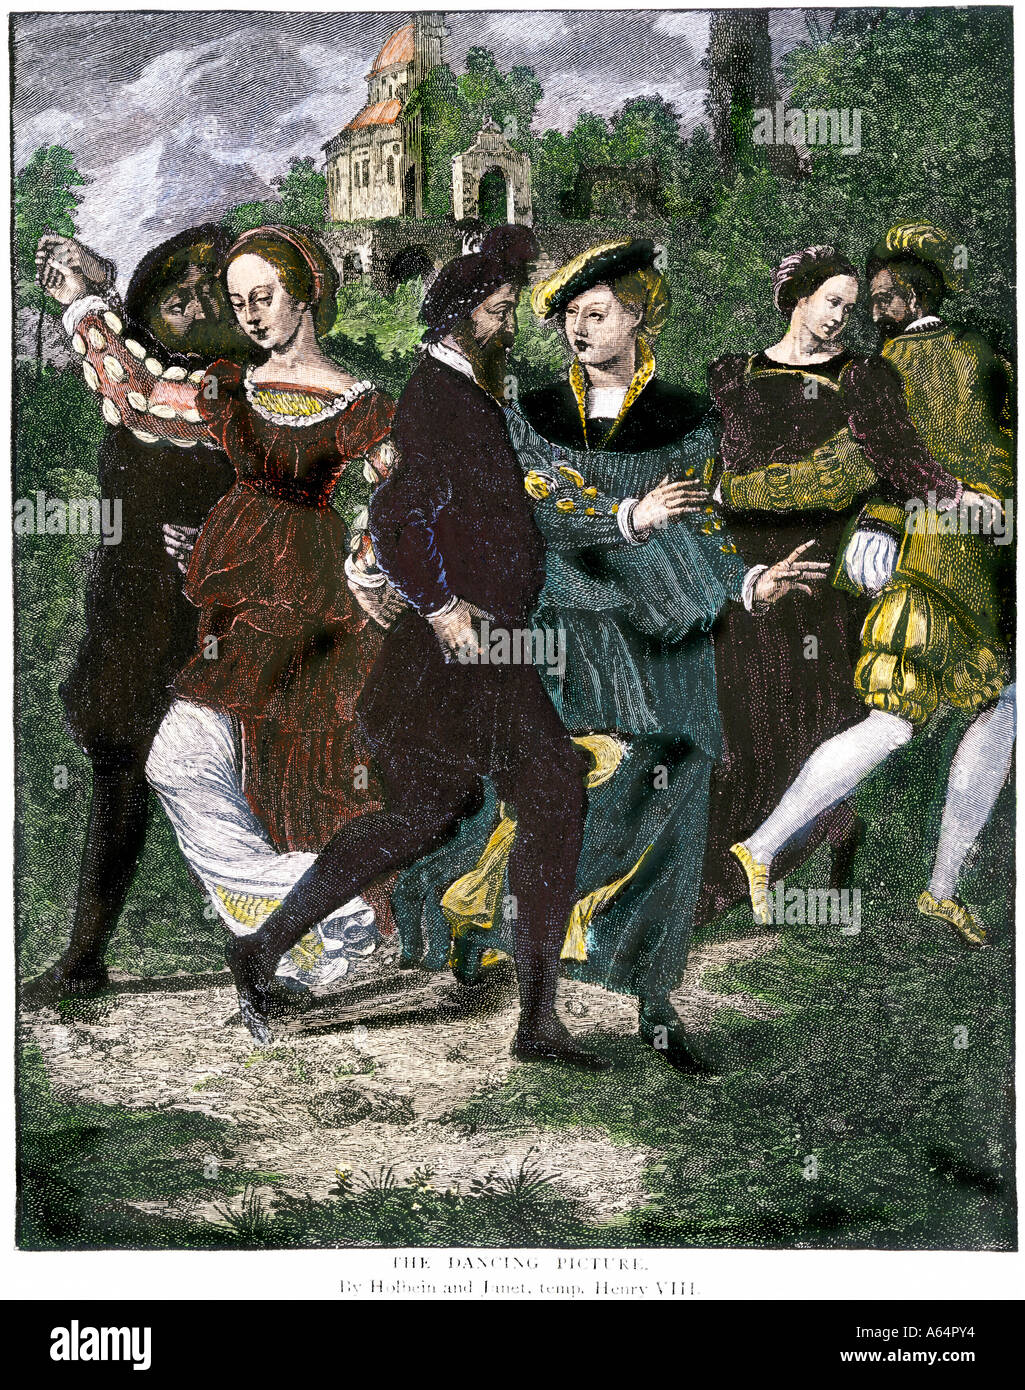 Les couples danser dans les années 1500, l'Angleterre des Tudor. À la main, gravure sur bois Banque D'Images